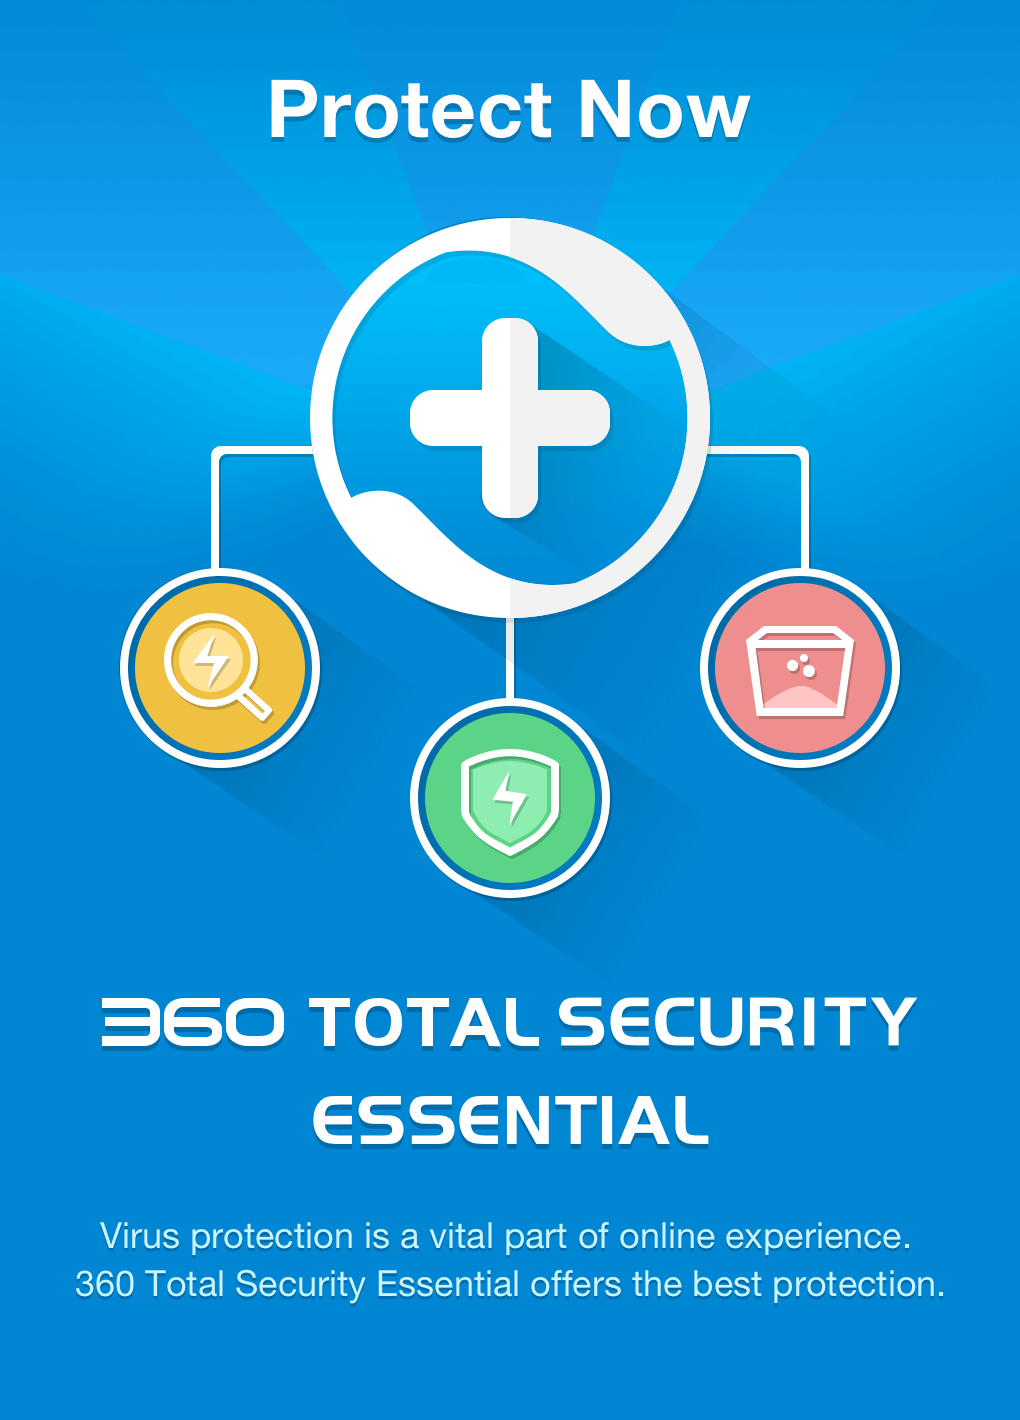 is 360 total security legit